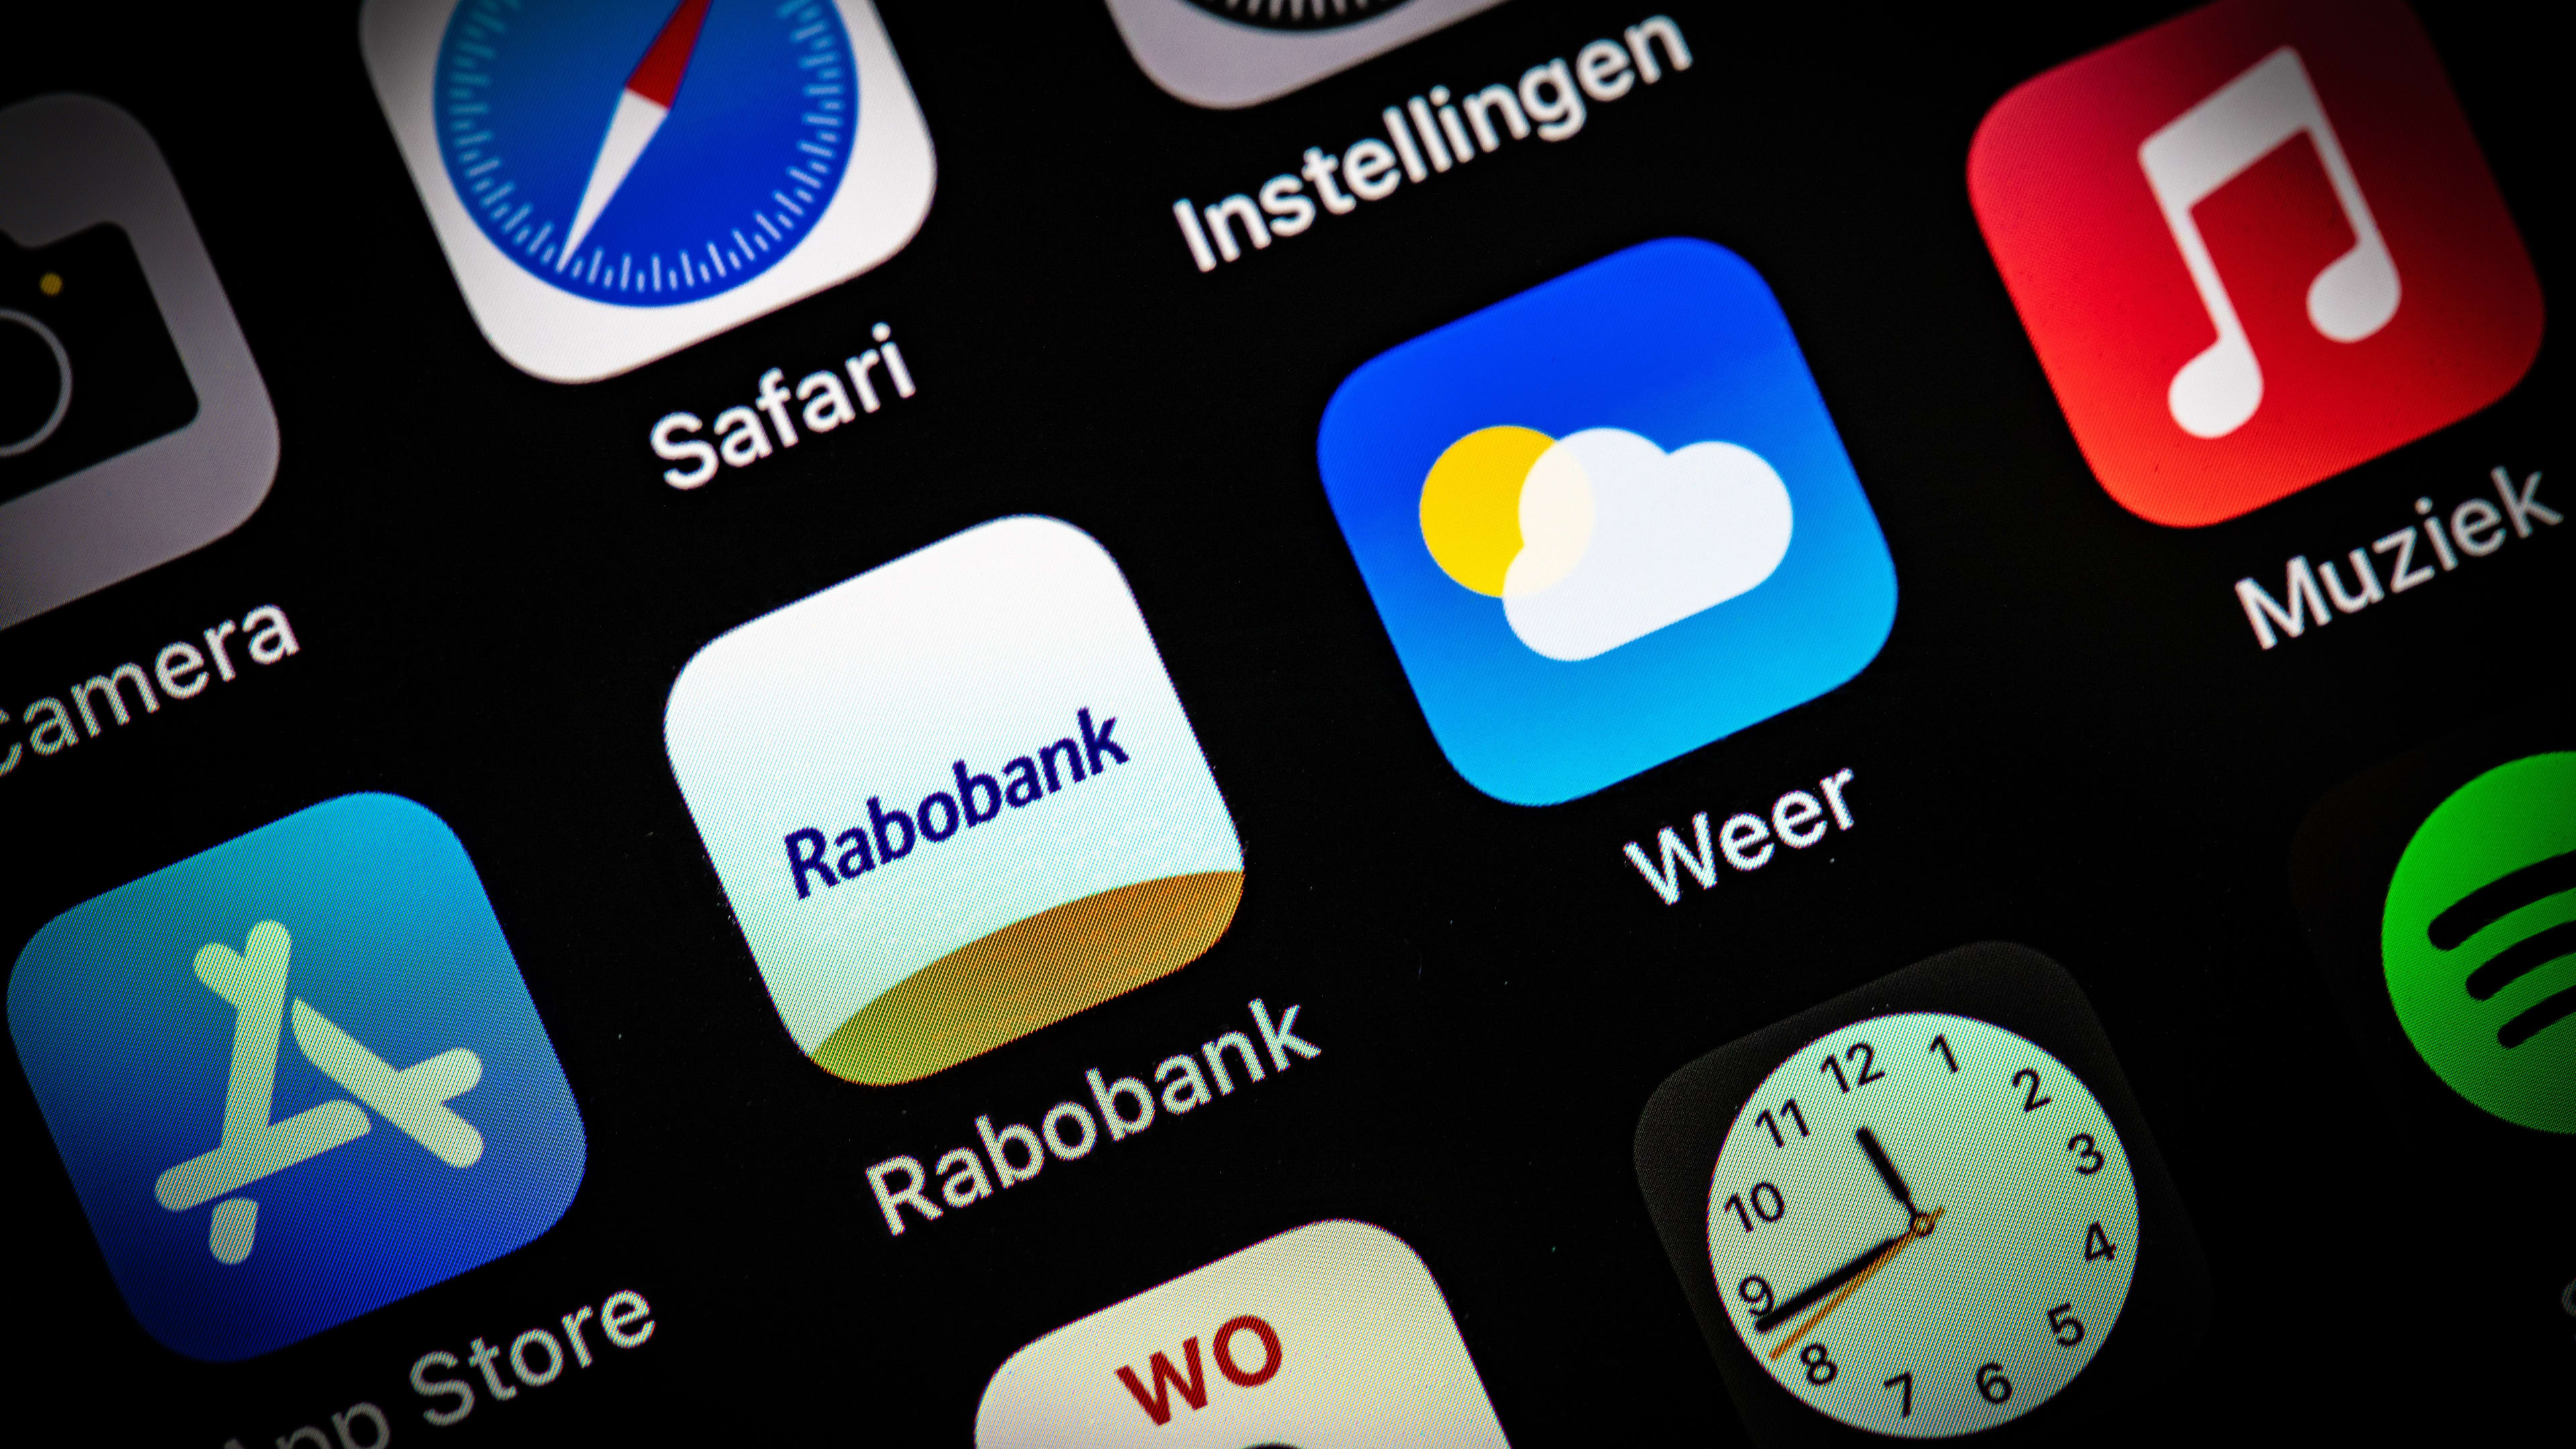 Storing bij internetbankieren Rabobank verholpen, app werkt weer